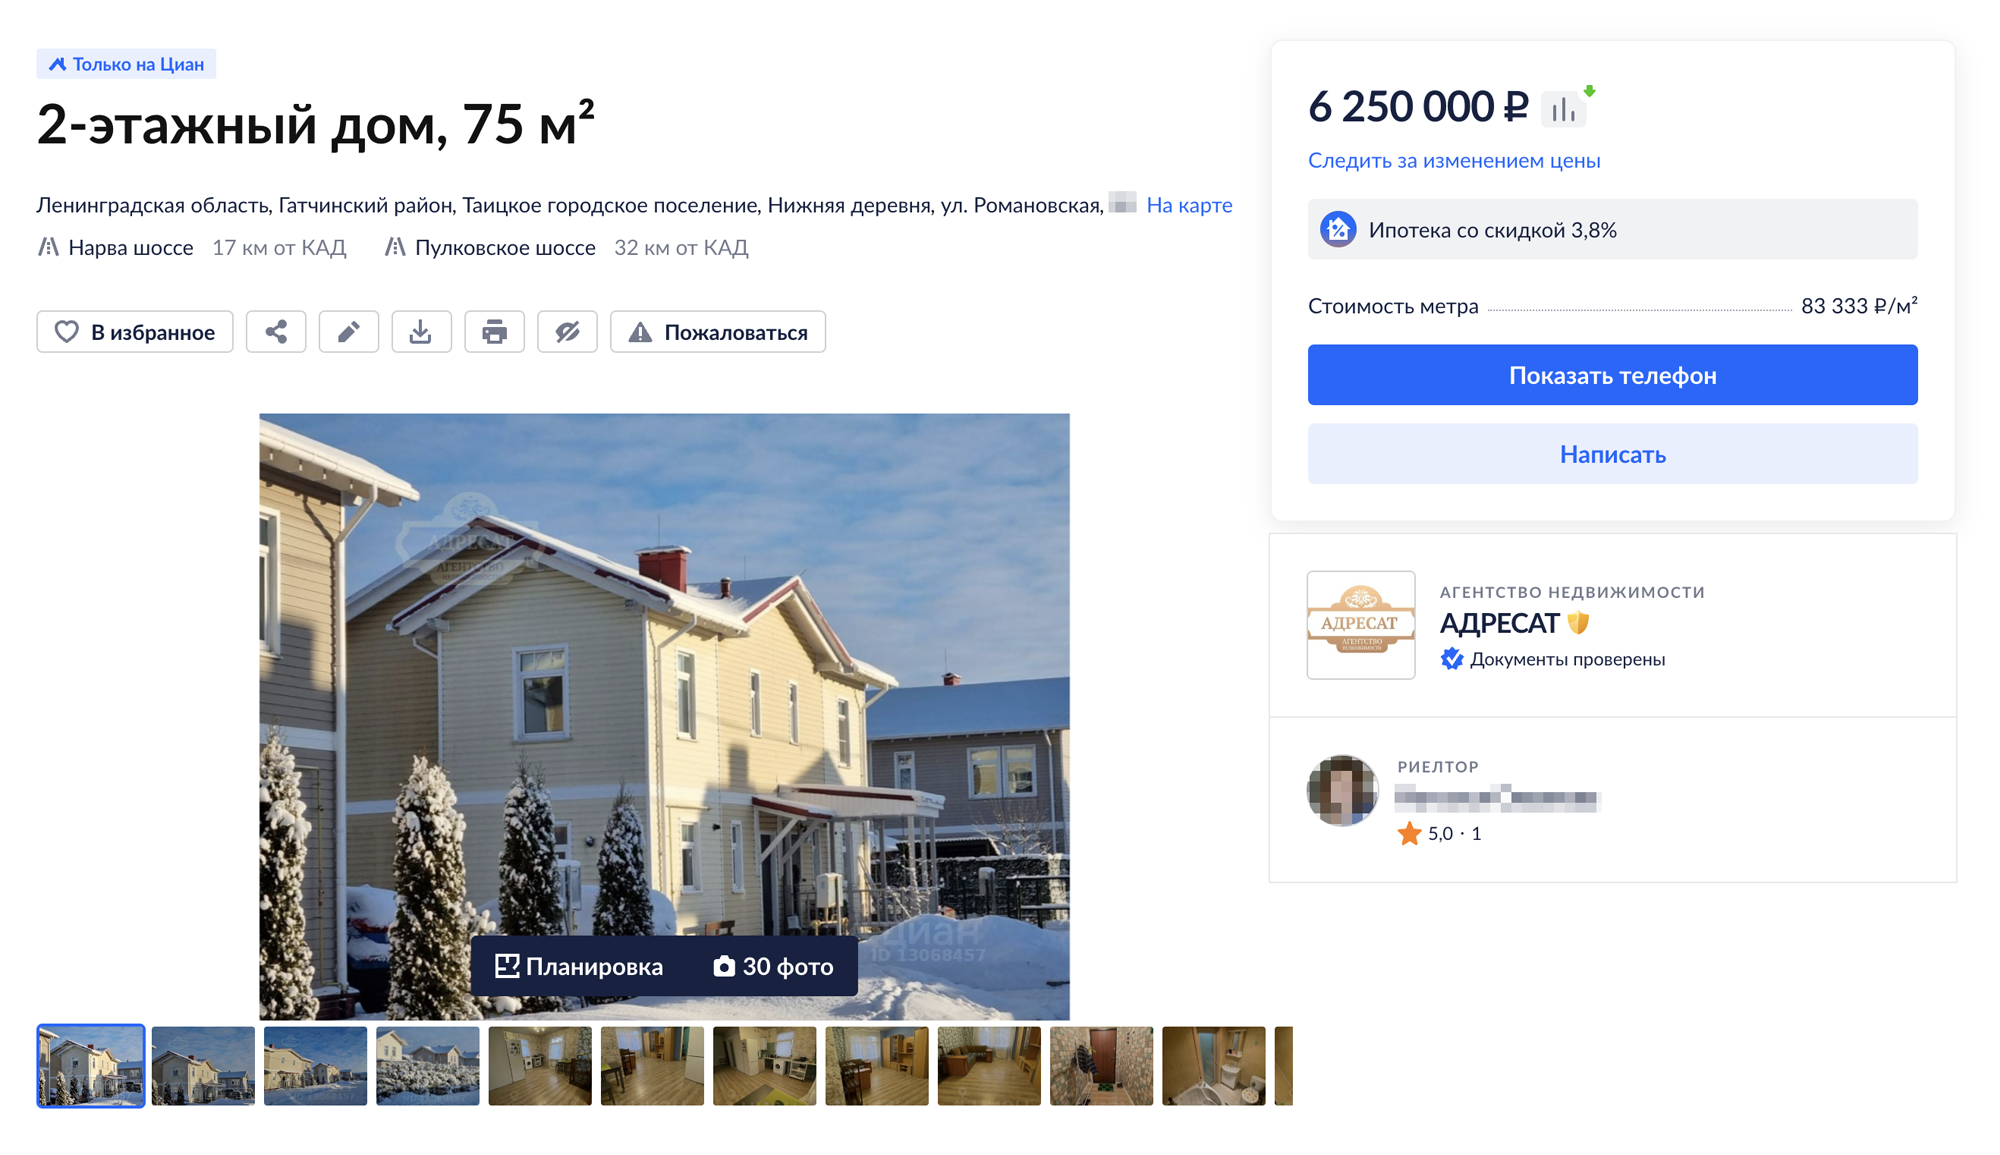 Здесь дуплекс продают как двухэтажный дом на отдельном земельном участке. Тем не менее это часть дома⁠-⁠дуплекса. Источник: spb.cian.ru